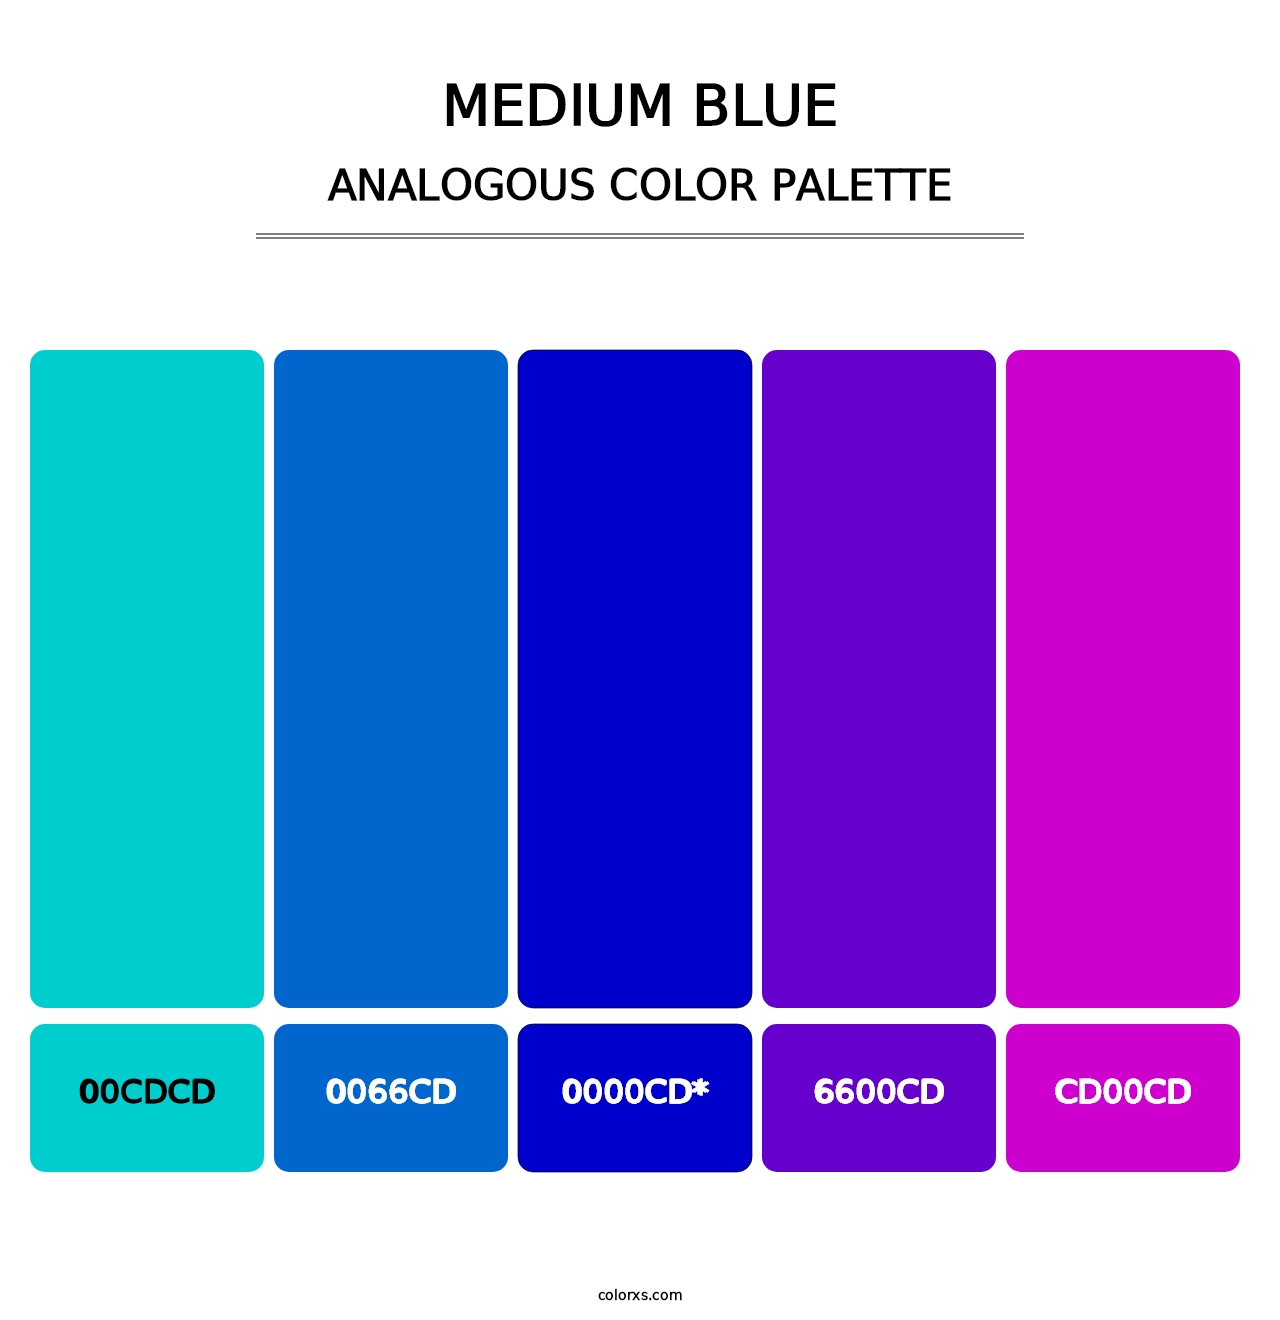 Medium Blue - Analogous Color Palette